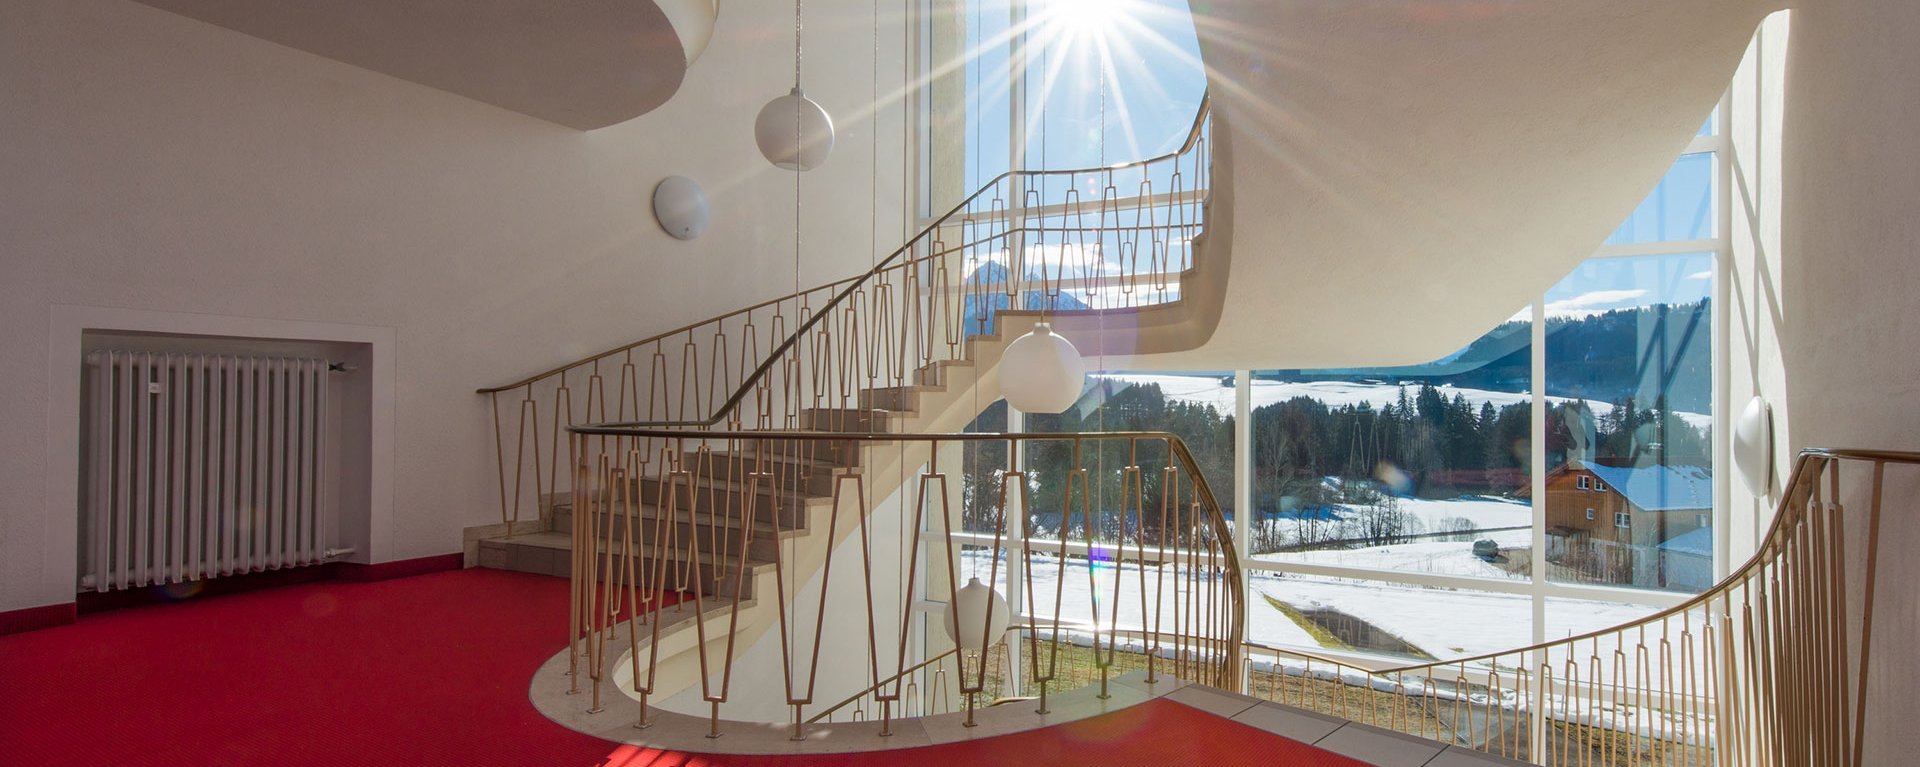 Treppenhaus der Suchtklinik - die Winterlandschaft bei Sonnenschein durch große Fenster gesehen